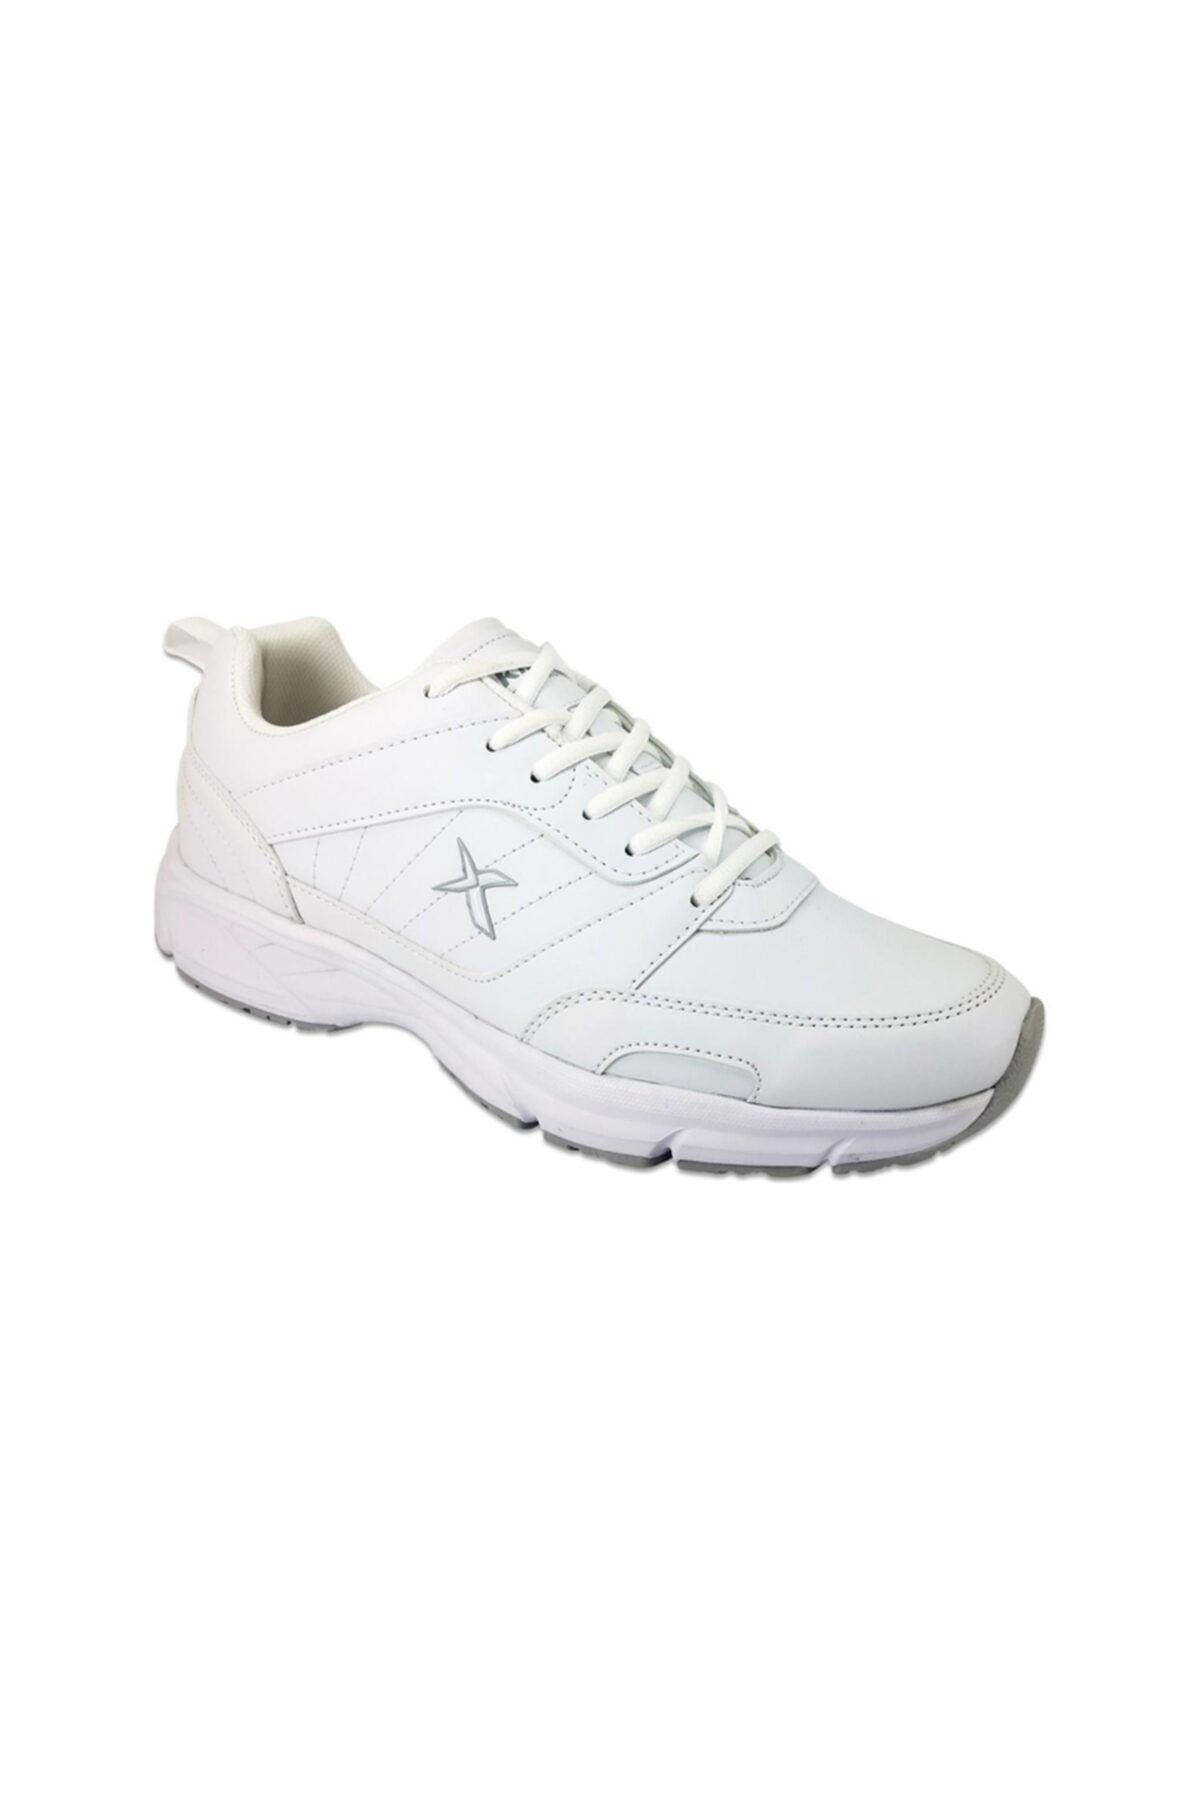 Kinetix Avery Pu Beyaz Kadın Spor Ayakkabı 100537428